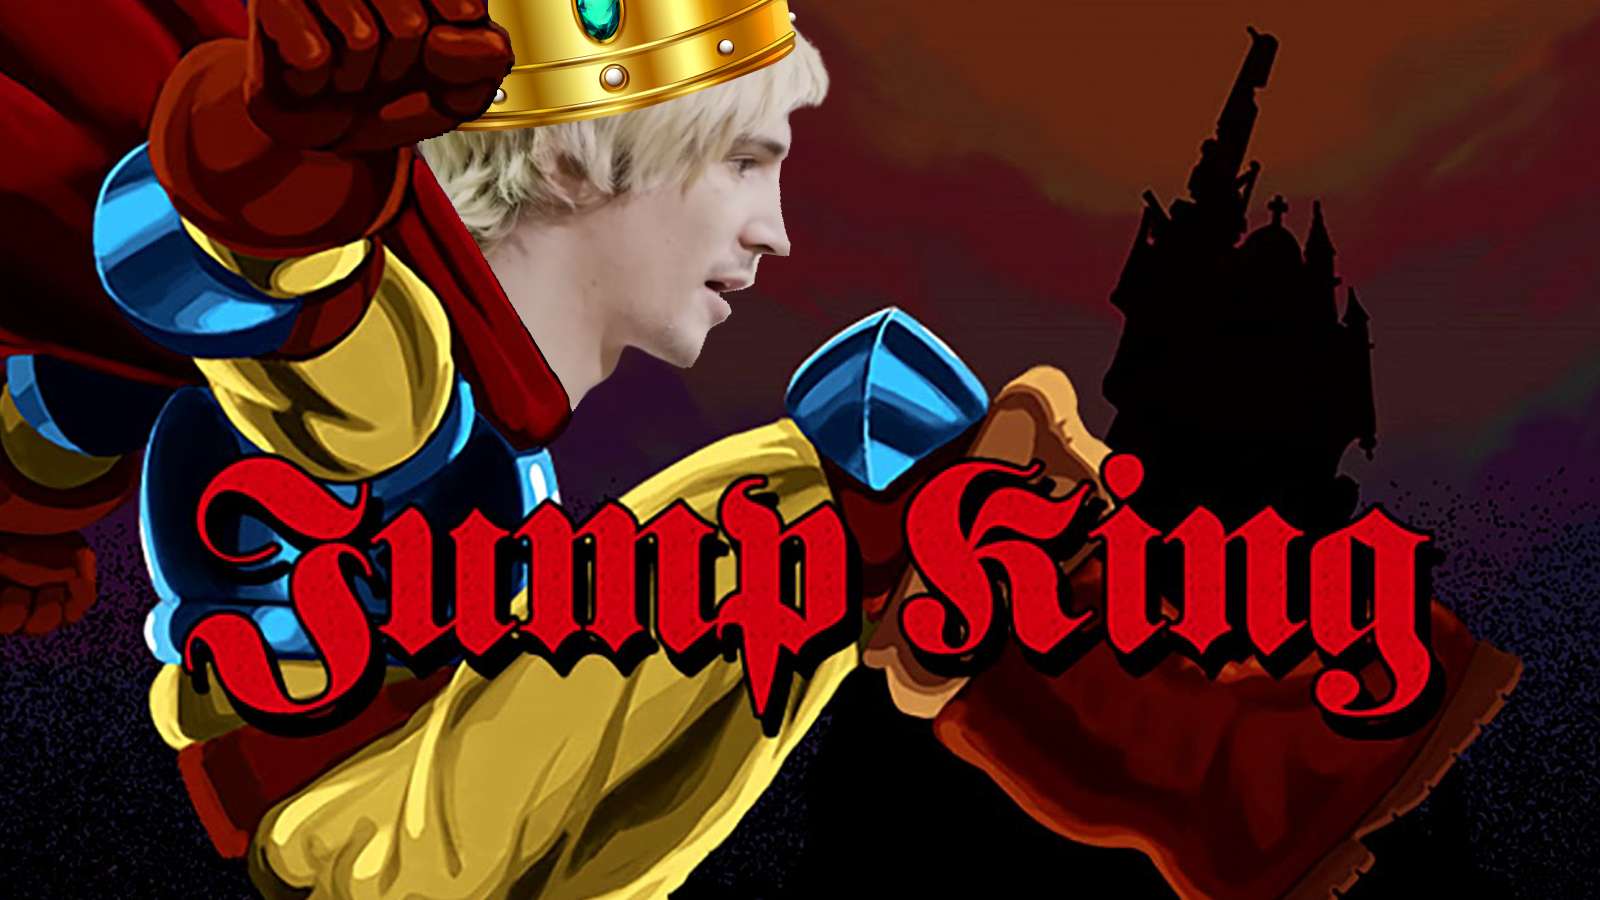 xqc playing jump king